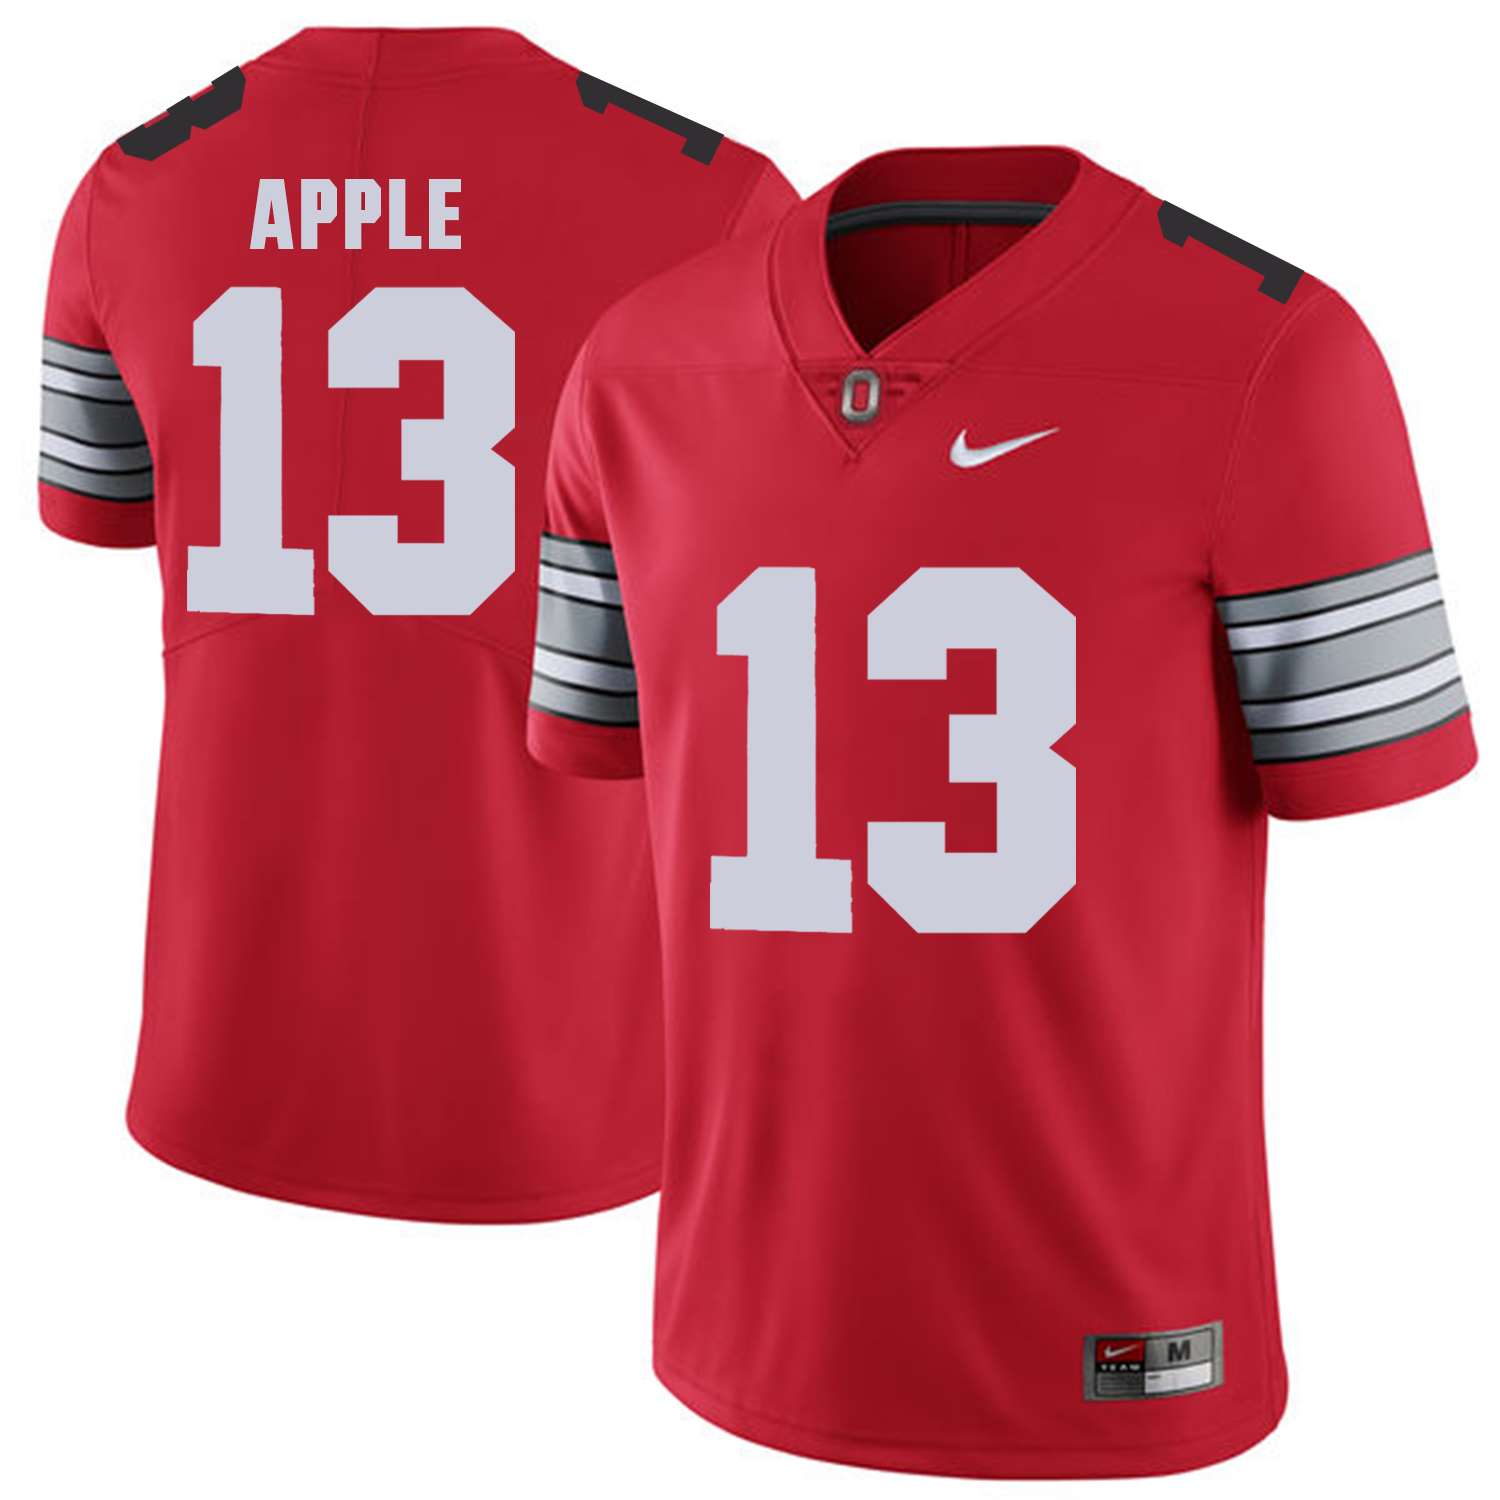 Men Ohio State 13 Apple Red Customized NCAA Jerseys